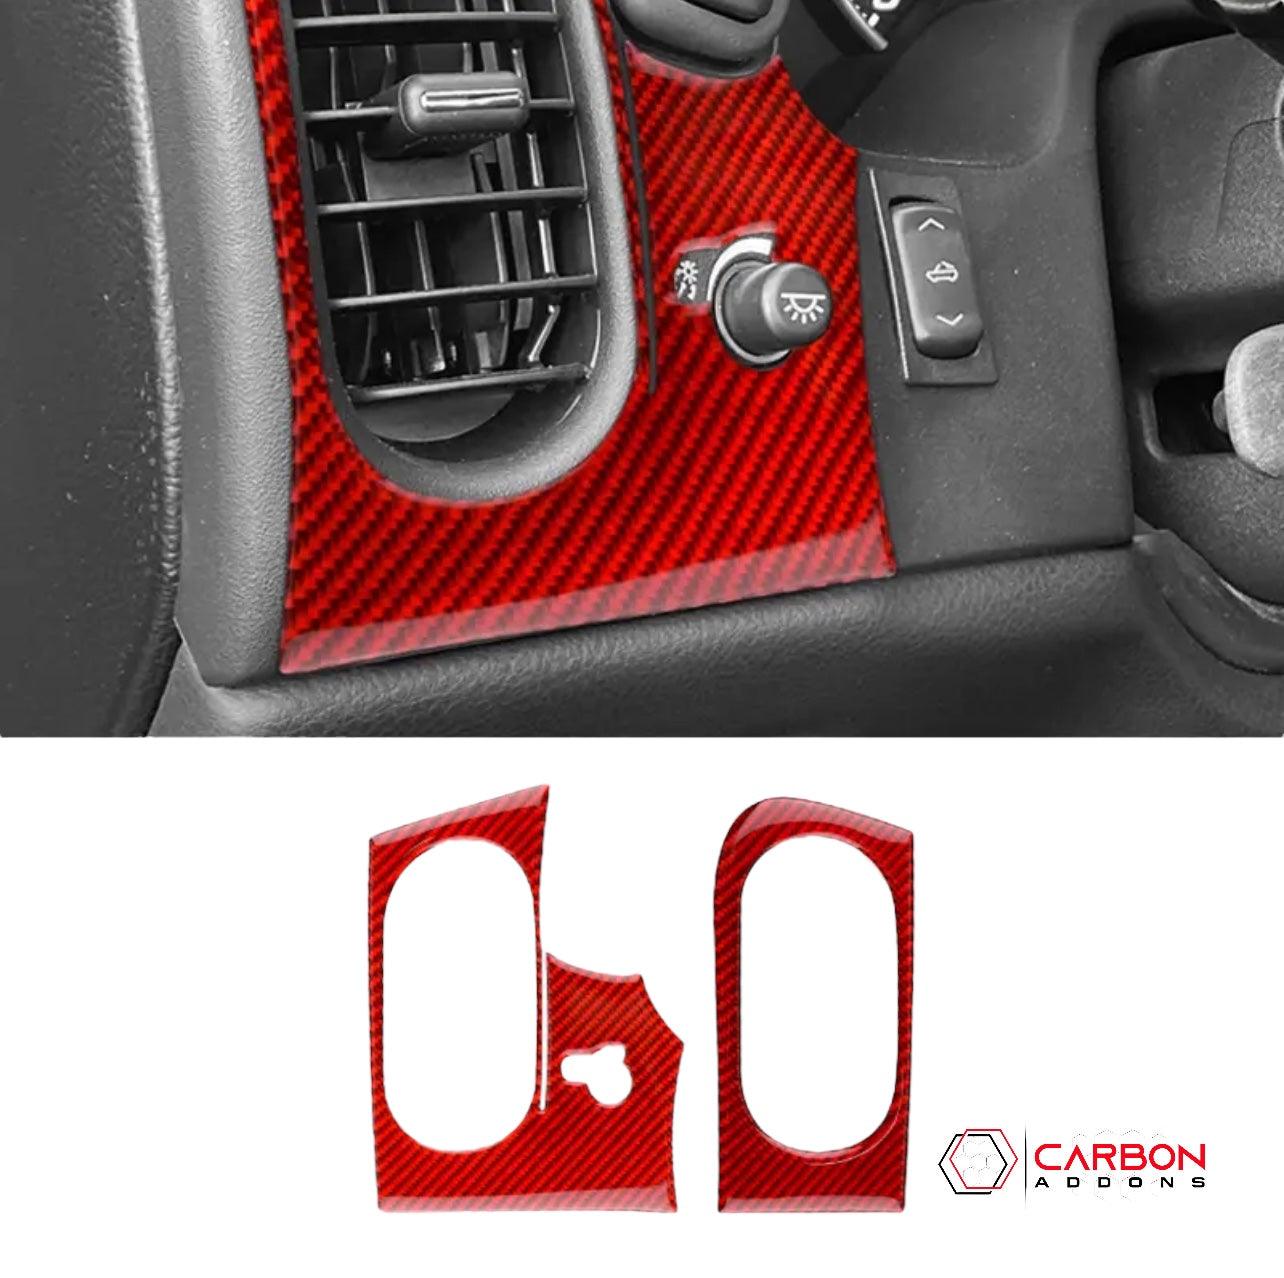 [2pcs] Real Carbon Fiber AC vents & Headlight Control Trim Overlay | C6 2005-2013 Corvette - carbonaddons Carbon Fiber Parts, Accessories, Upgrades, Mods